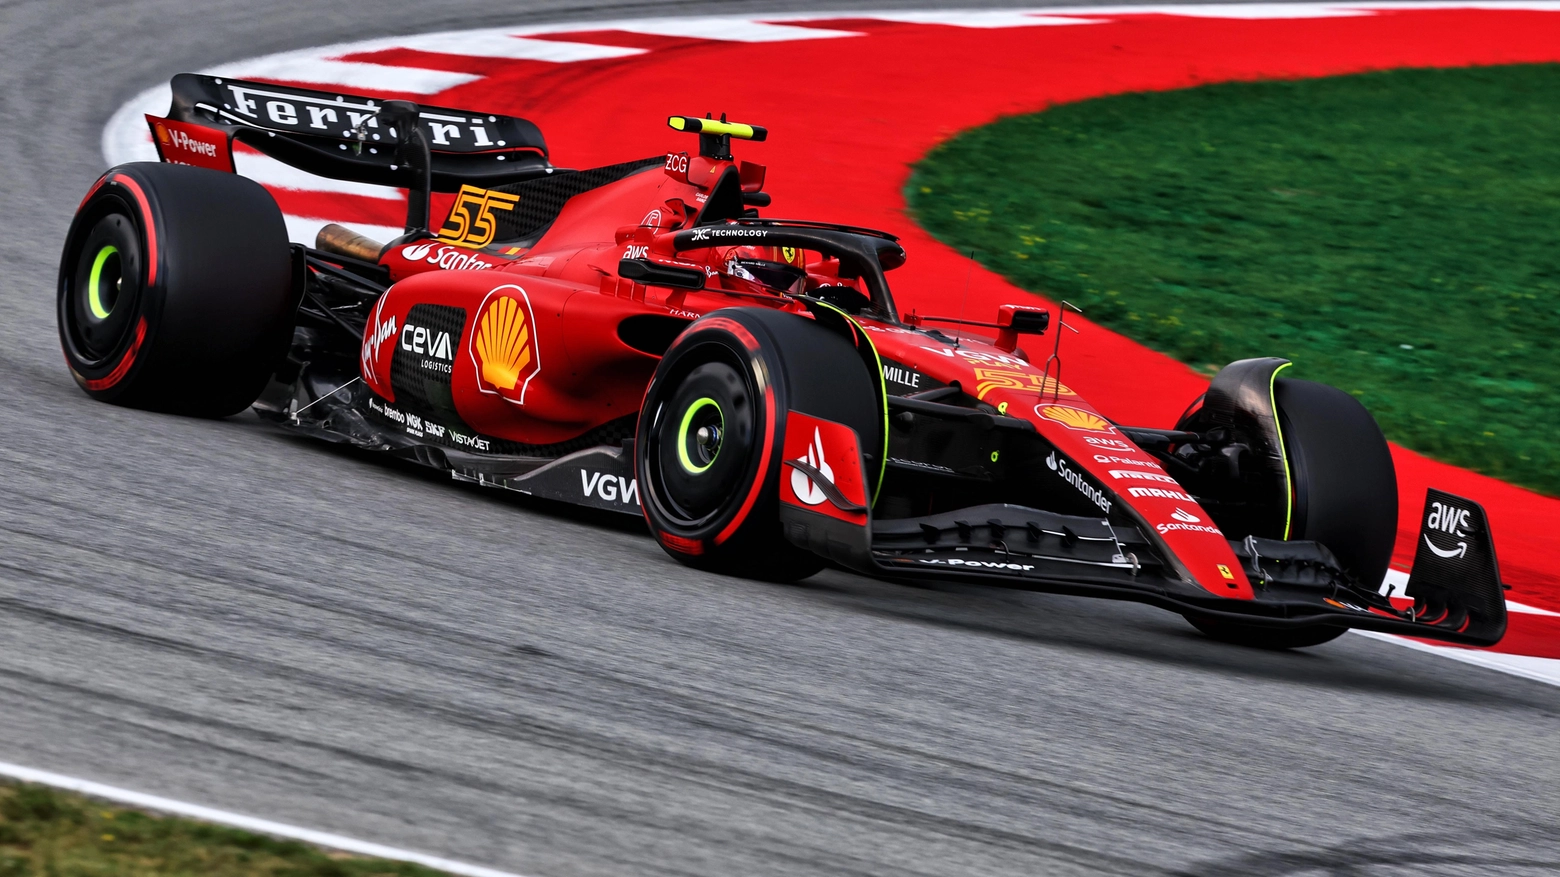 Gp di Spagna, la Ferrari dai due volti: prima e ultima fila